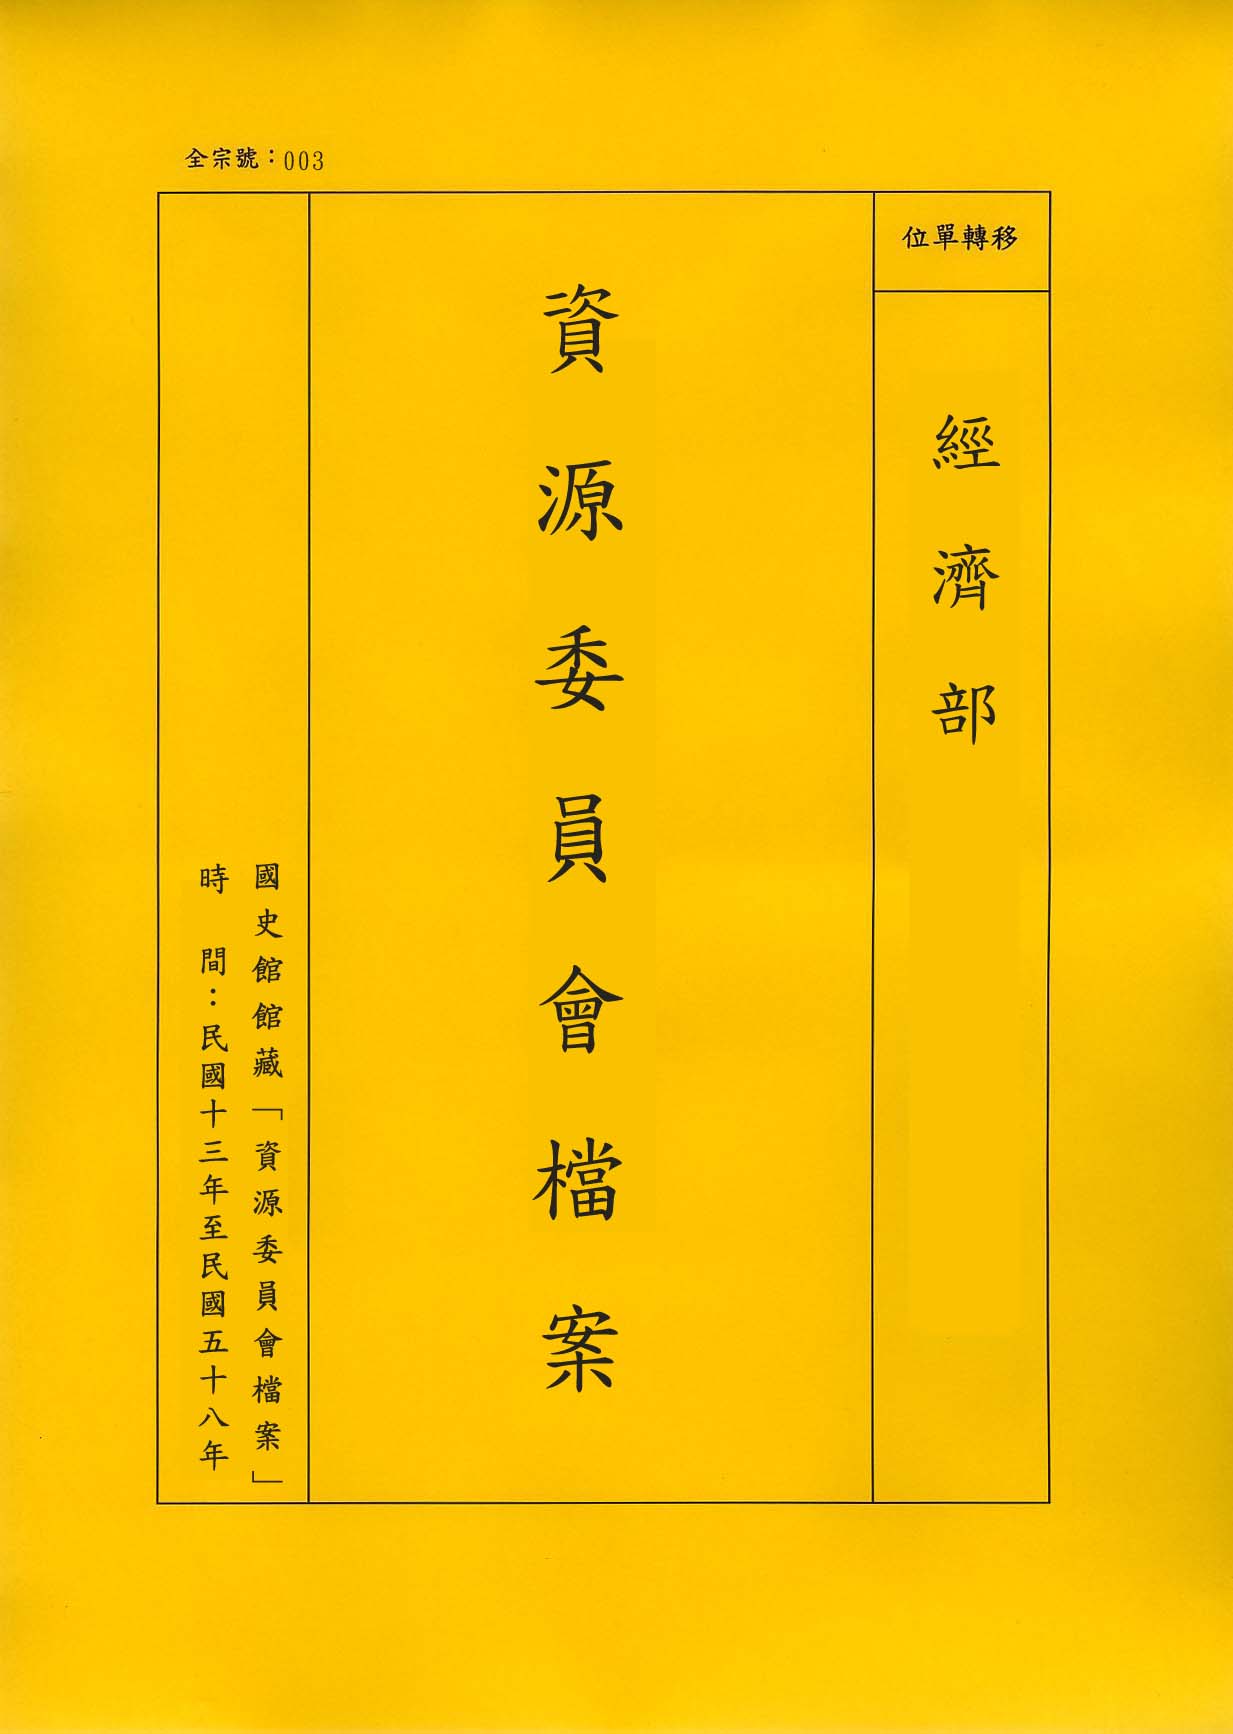 卷名:中國紡織建設公司遼陽紡織廠接收清冊(003-010302-0472)